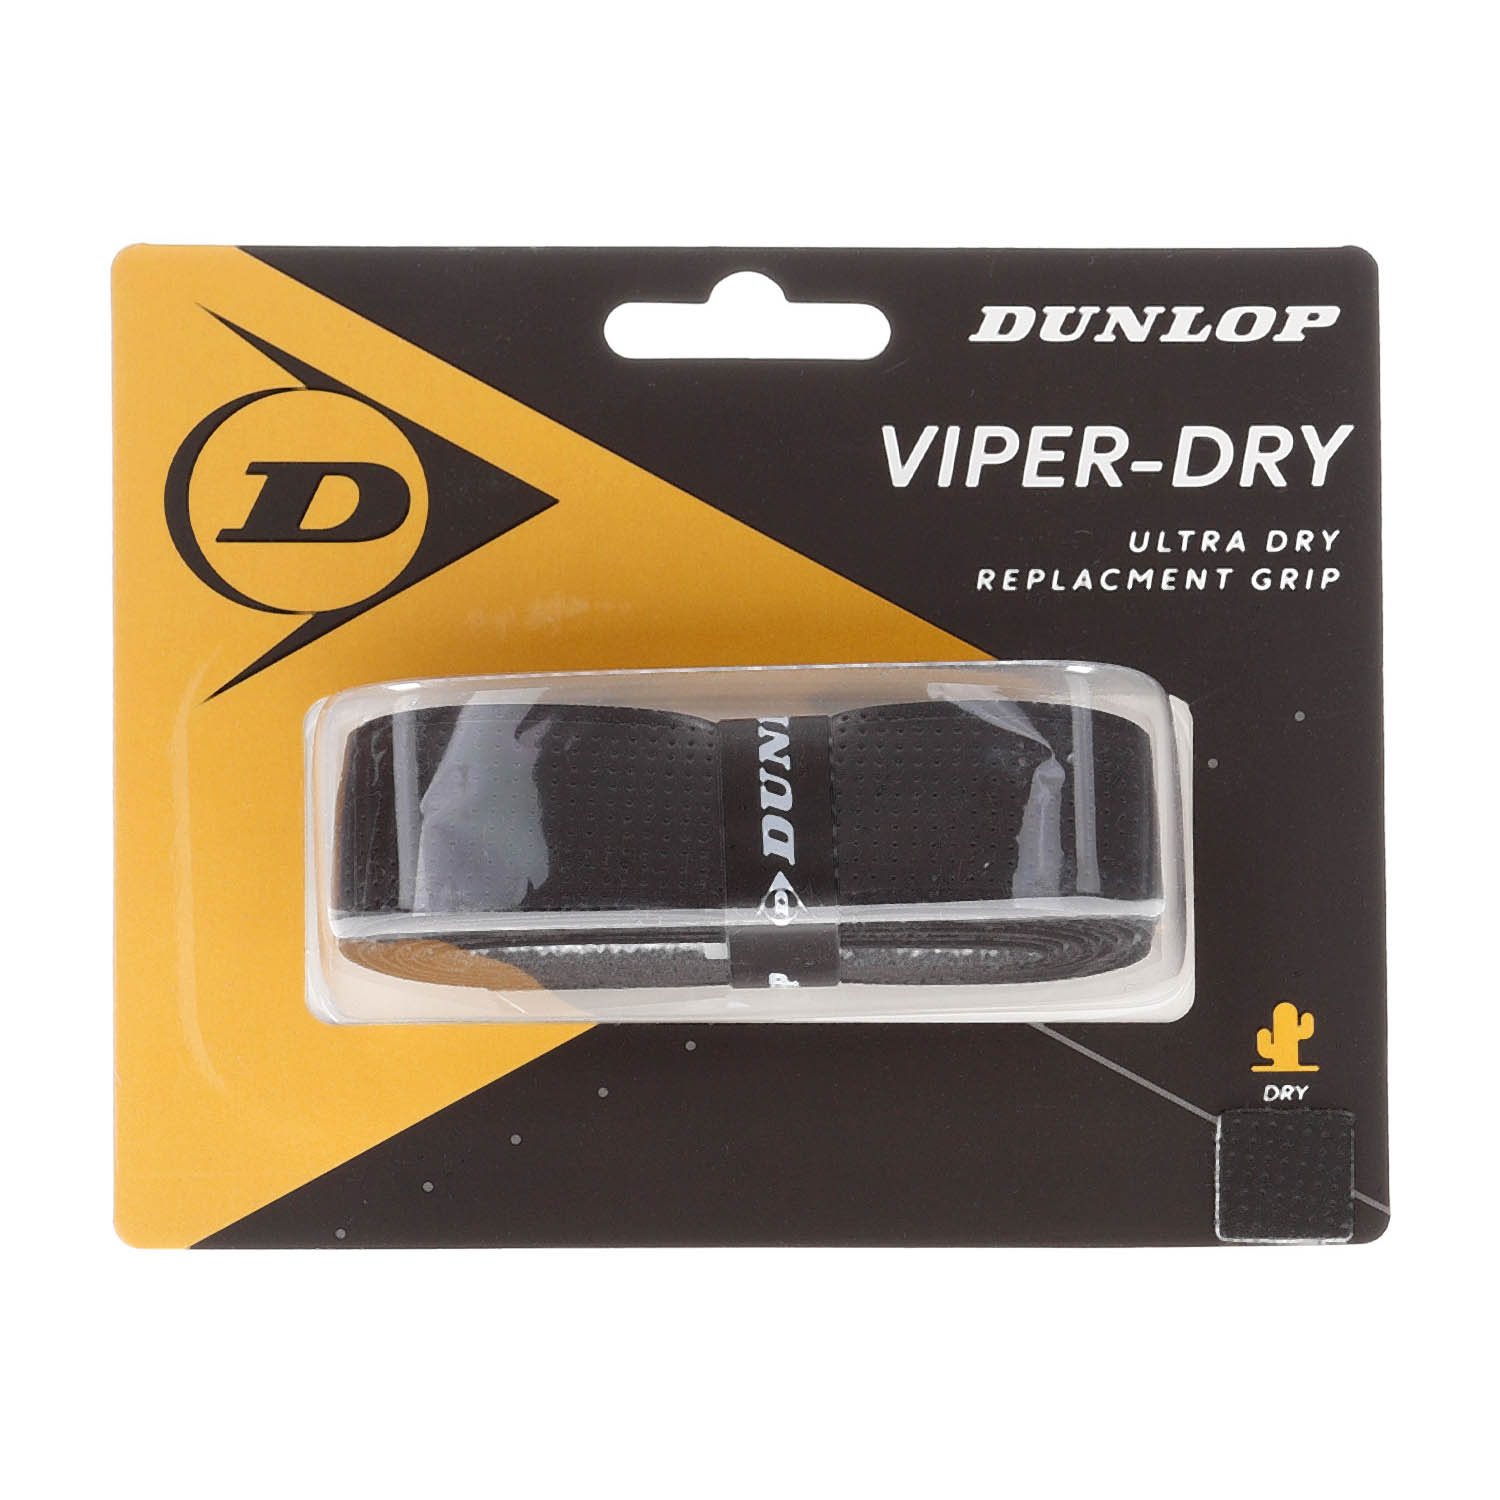 Dunlop Viper-Dry Grips - Black